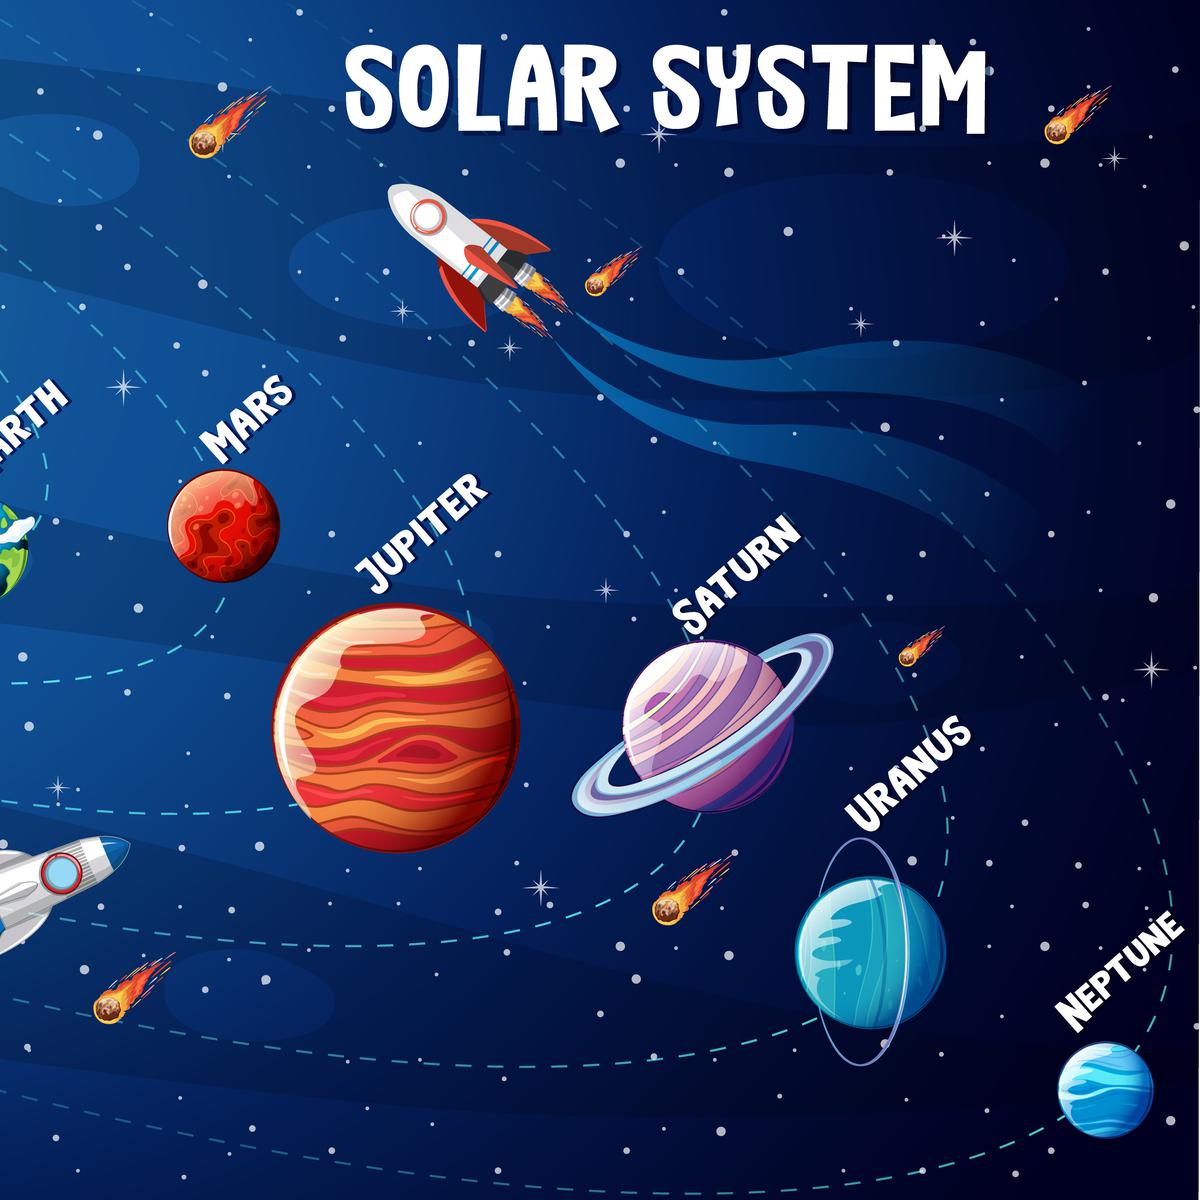 Planet tata surya yang lebih dekat dengan bumi adalah